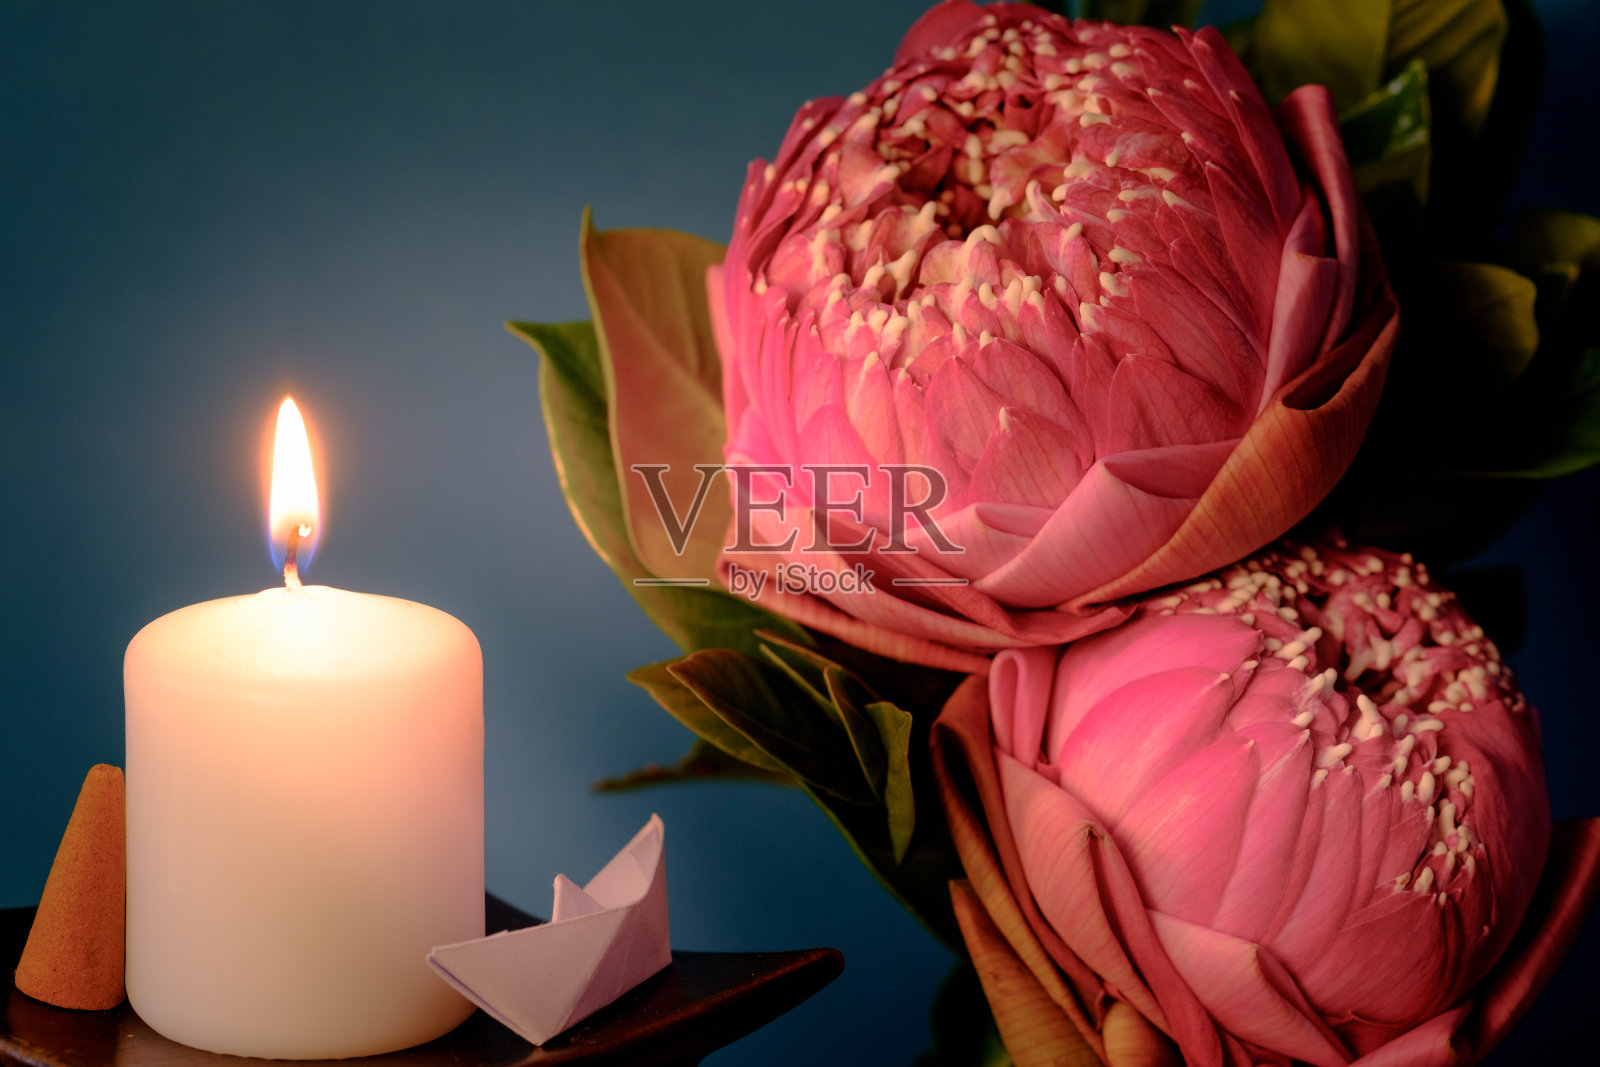 复古的形象风格在粉红色的折叠式睡莲或莲花泰国风格与白色的蜡烛灯供崇拜照片摄影图片